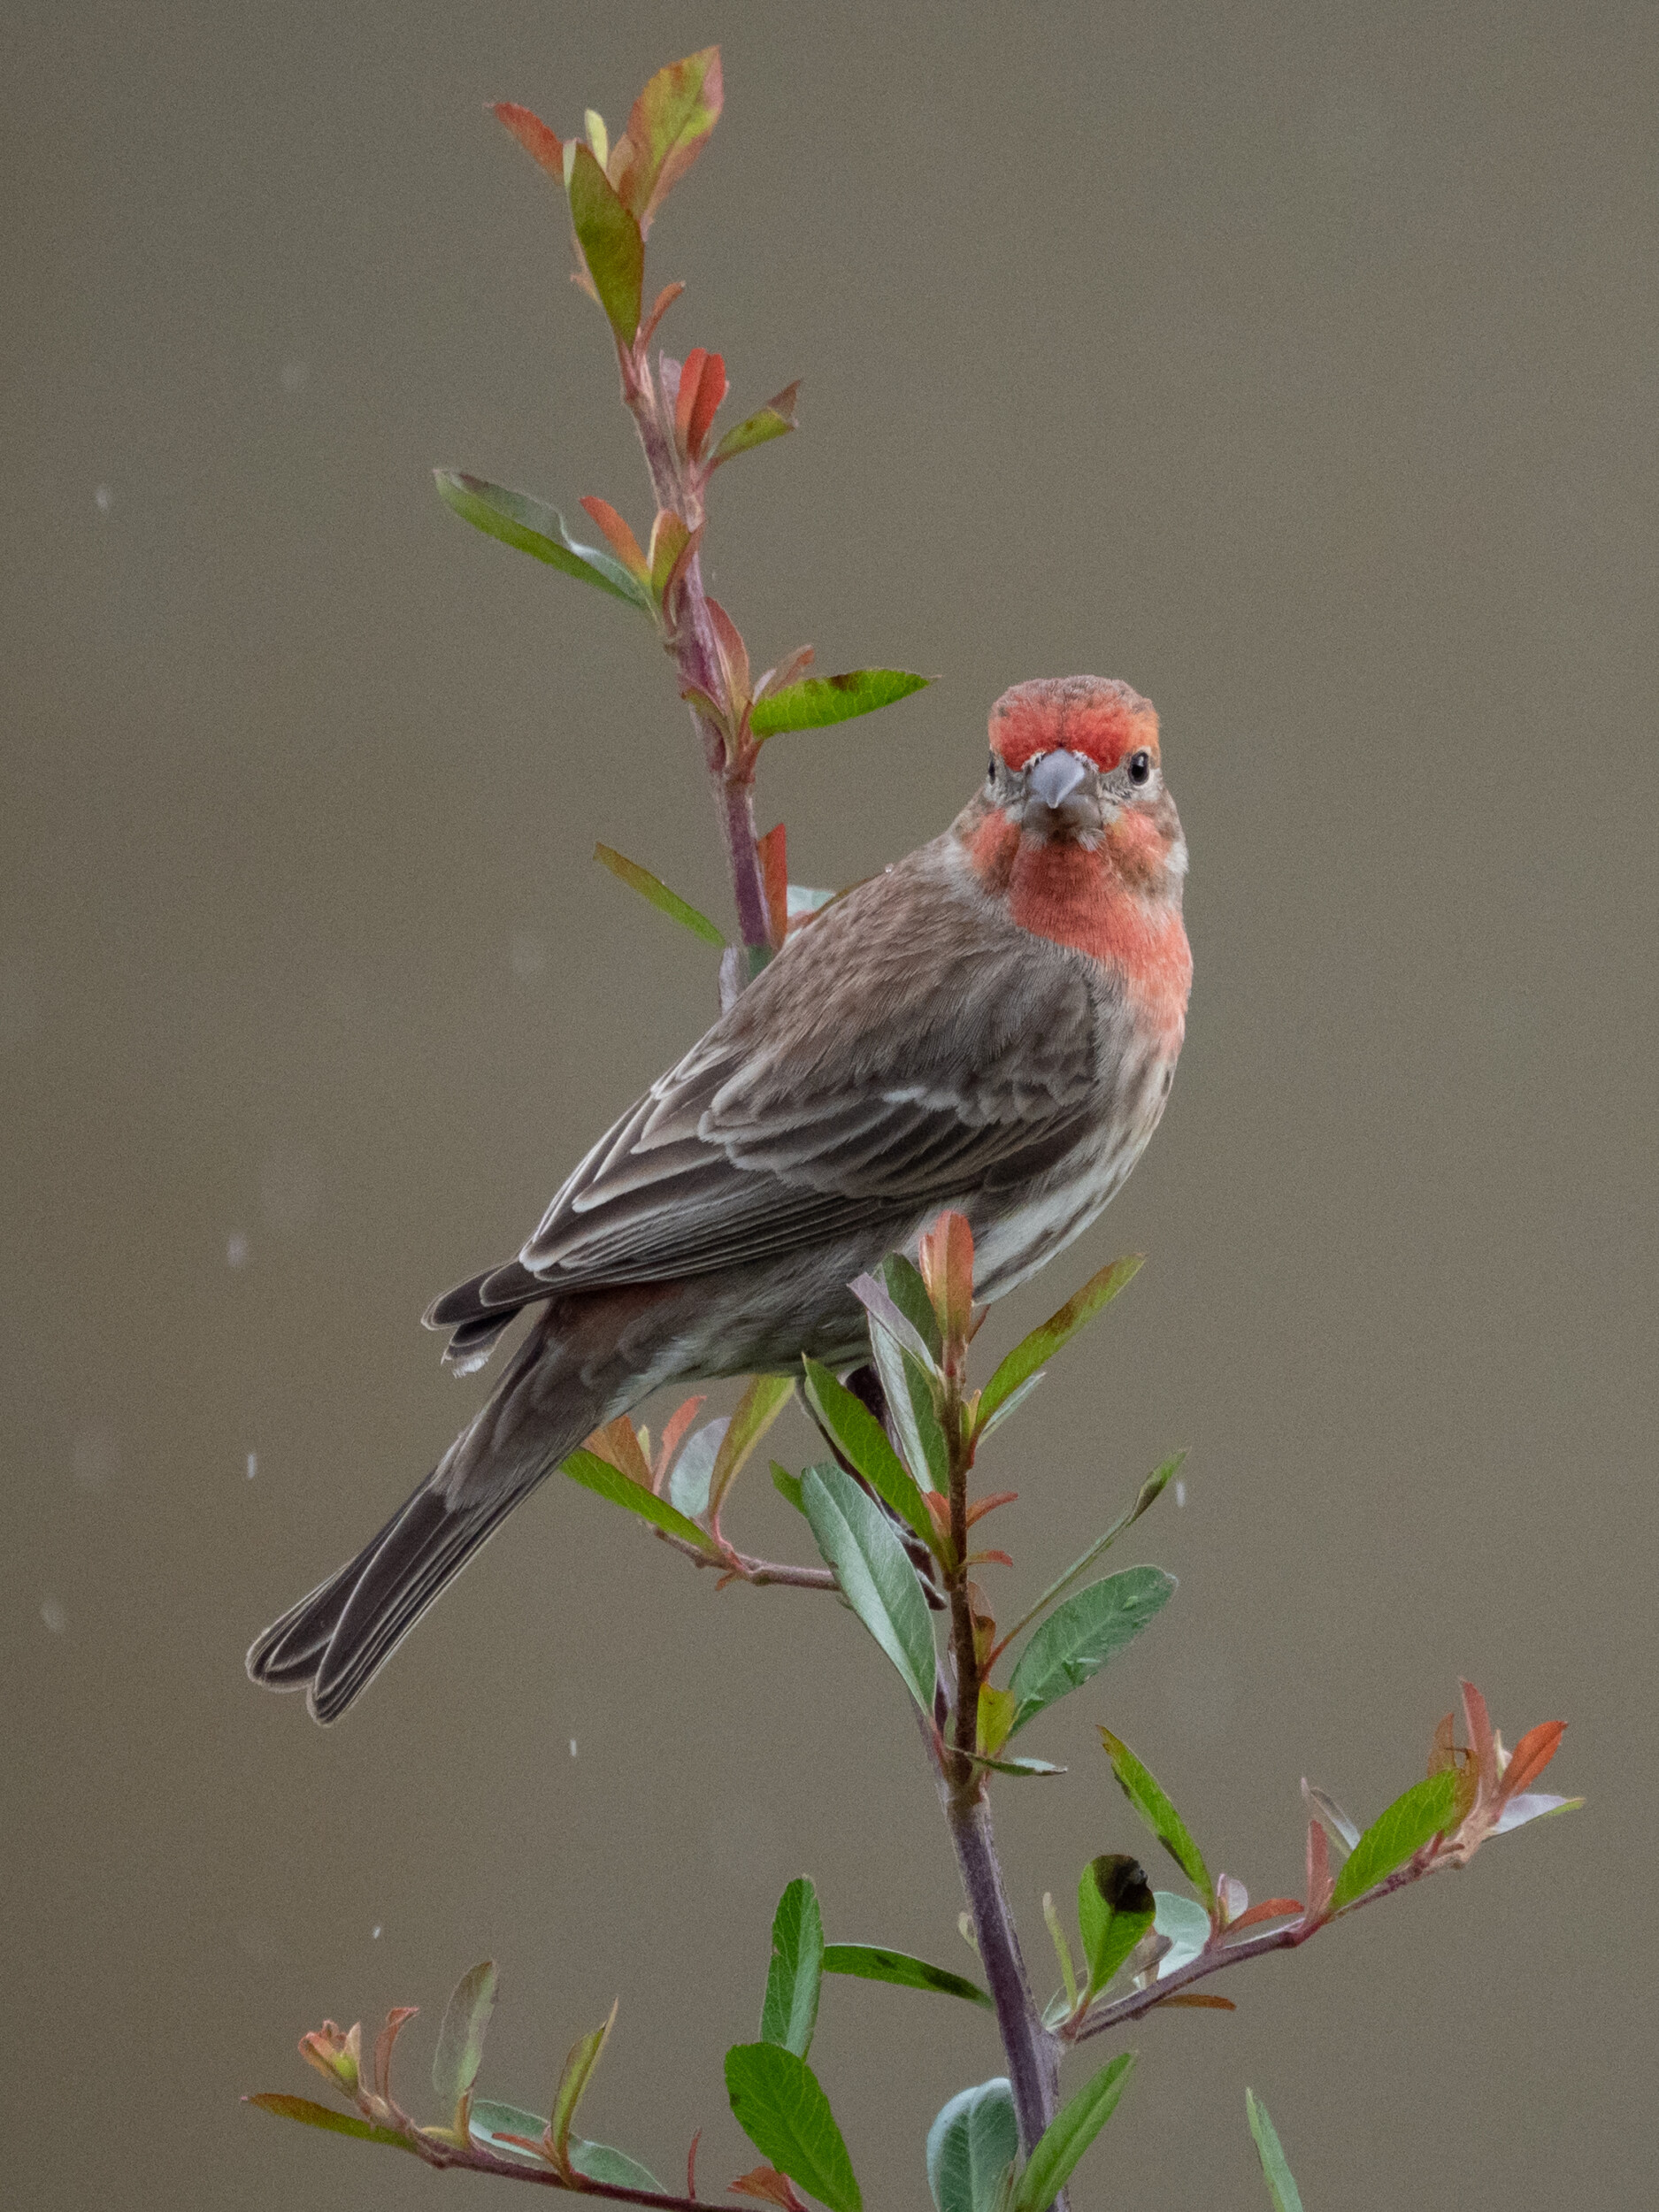 Male House Finch in Rain